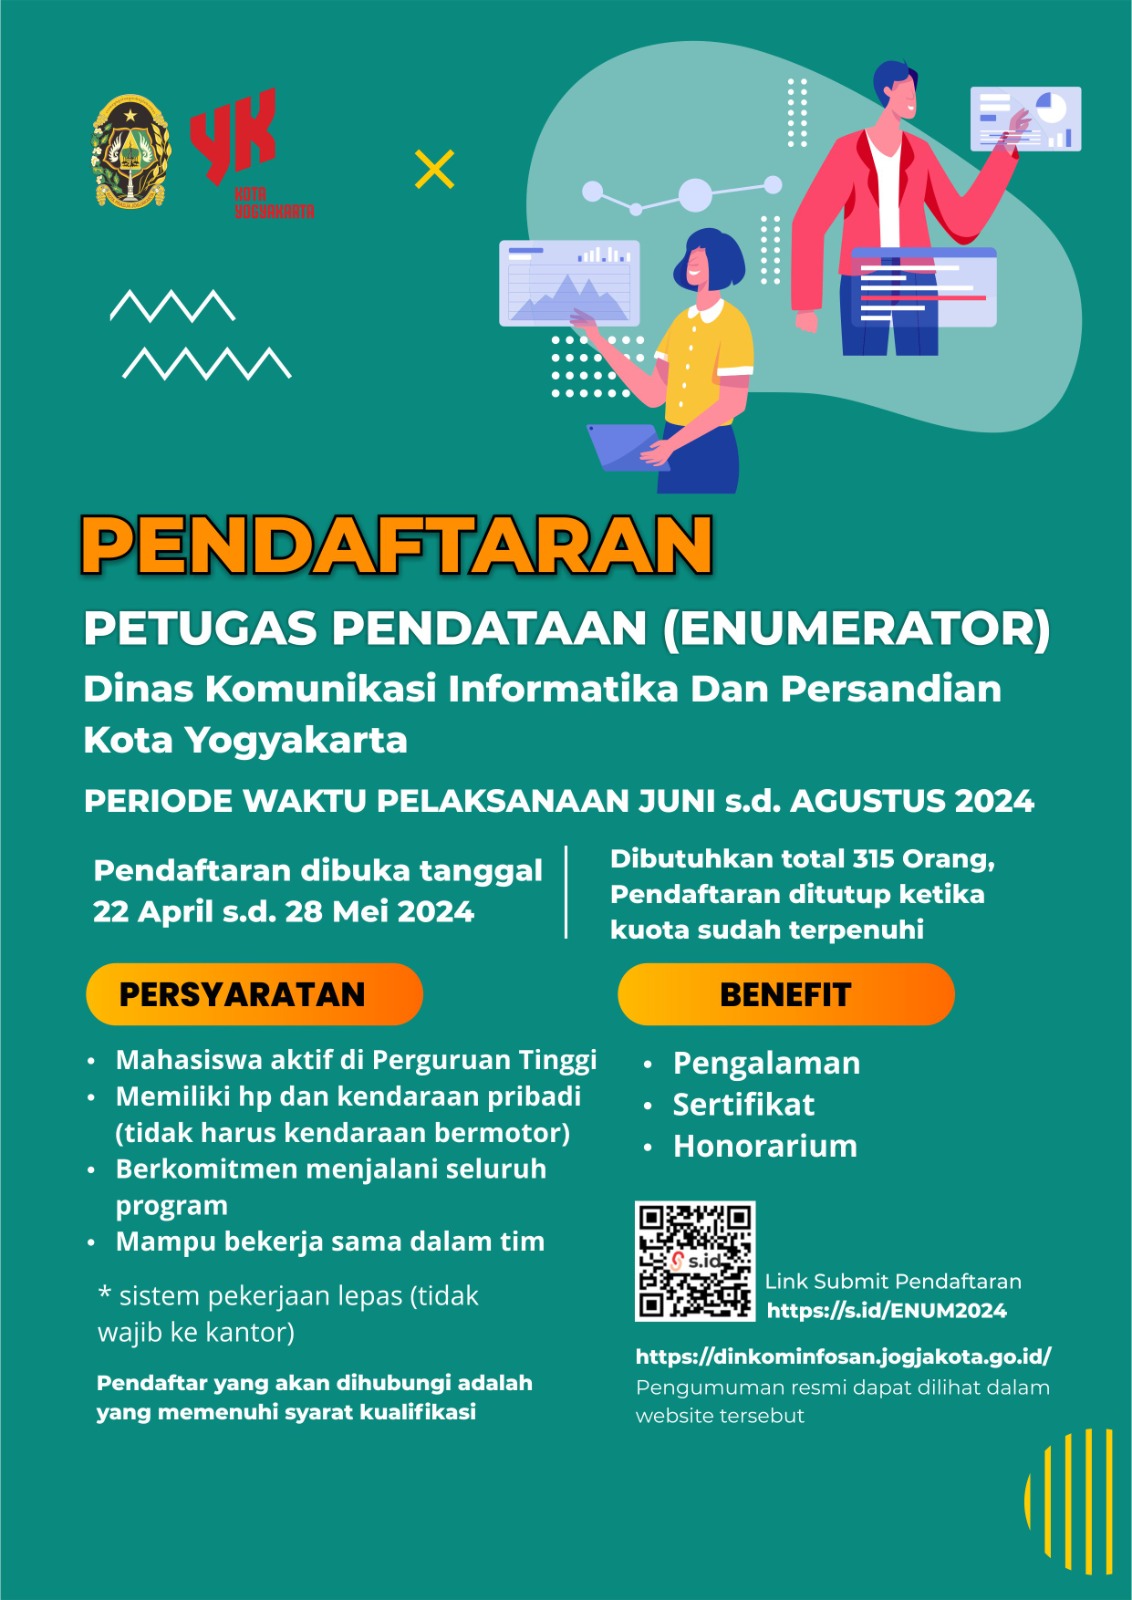 Pengumuman Pendaftaran  Petugas Pendataan (Enumerator) Dinas Komunikasi Informatika dan Persandian Kota Yogyakarta TA. 2024